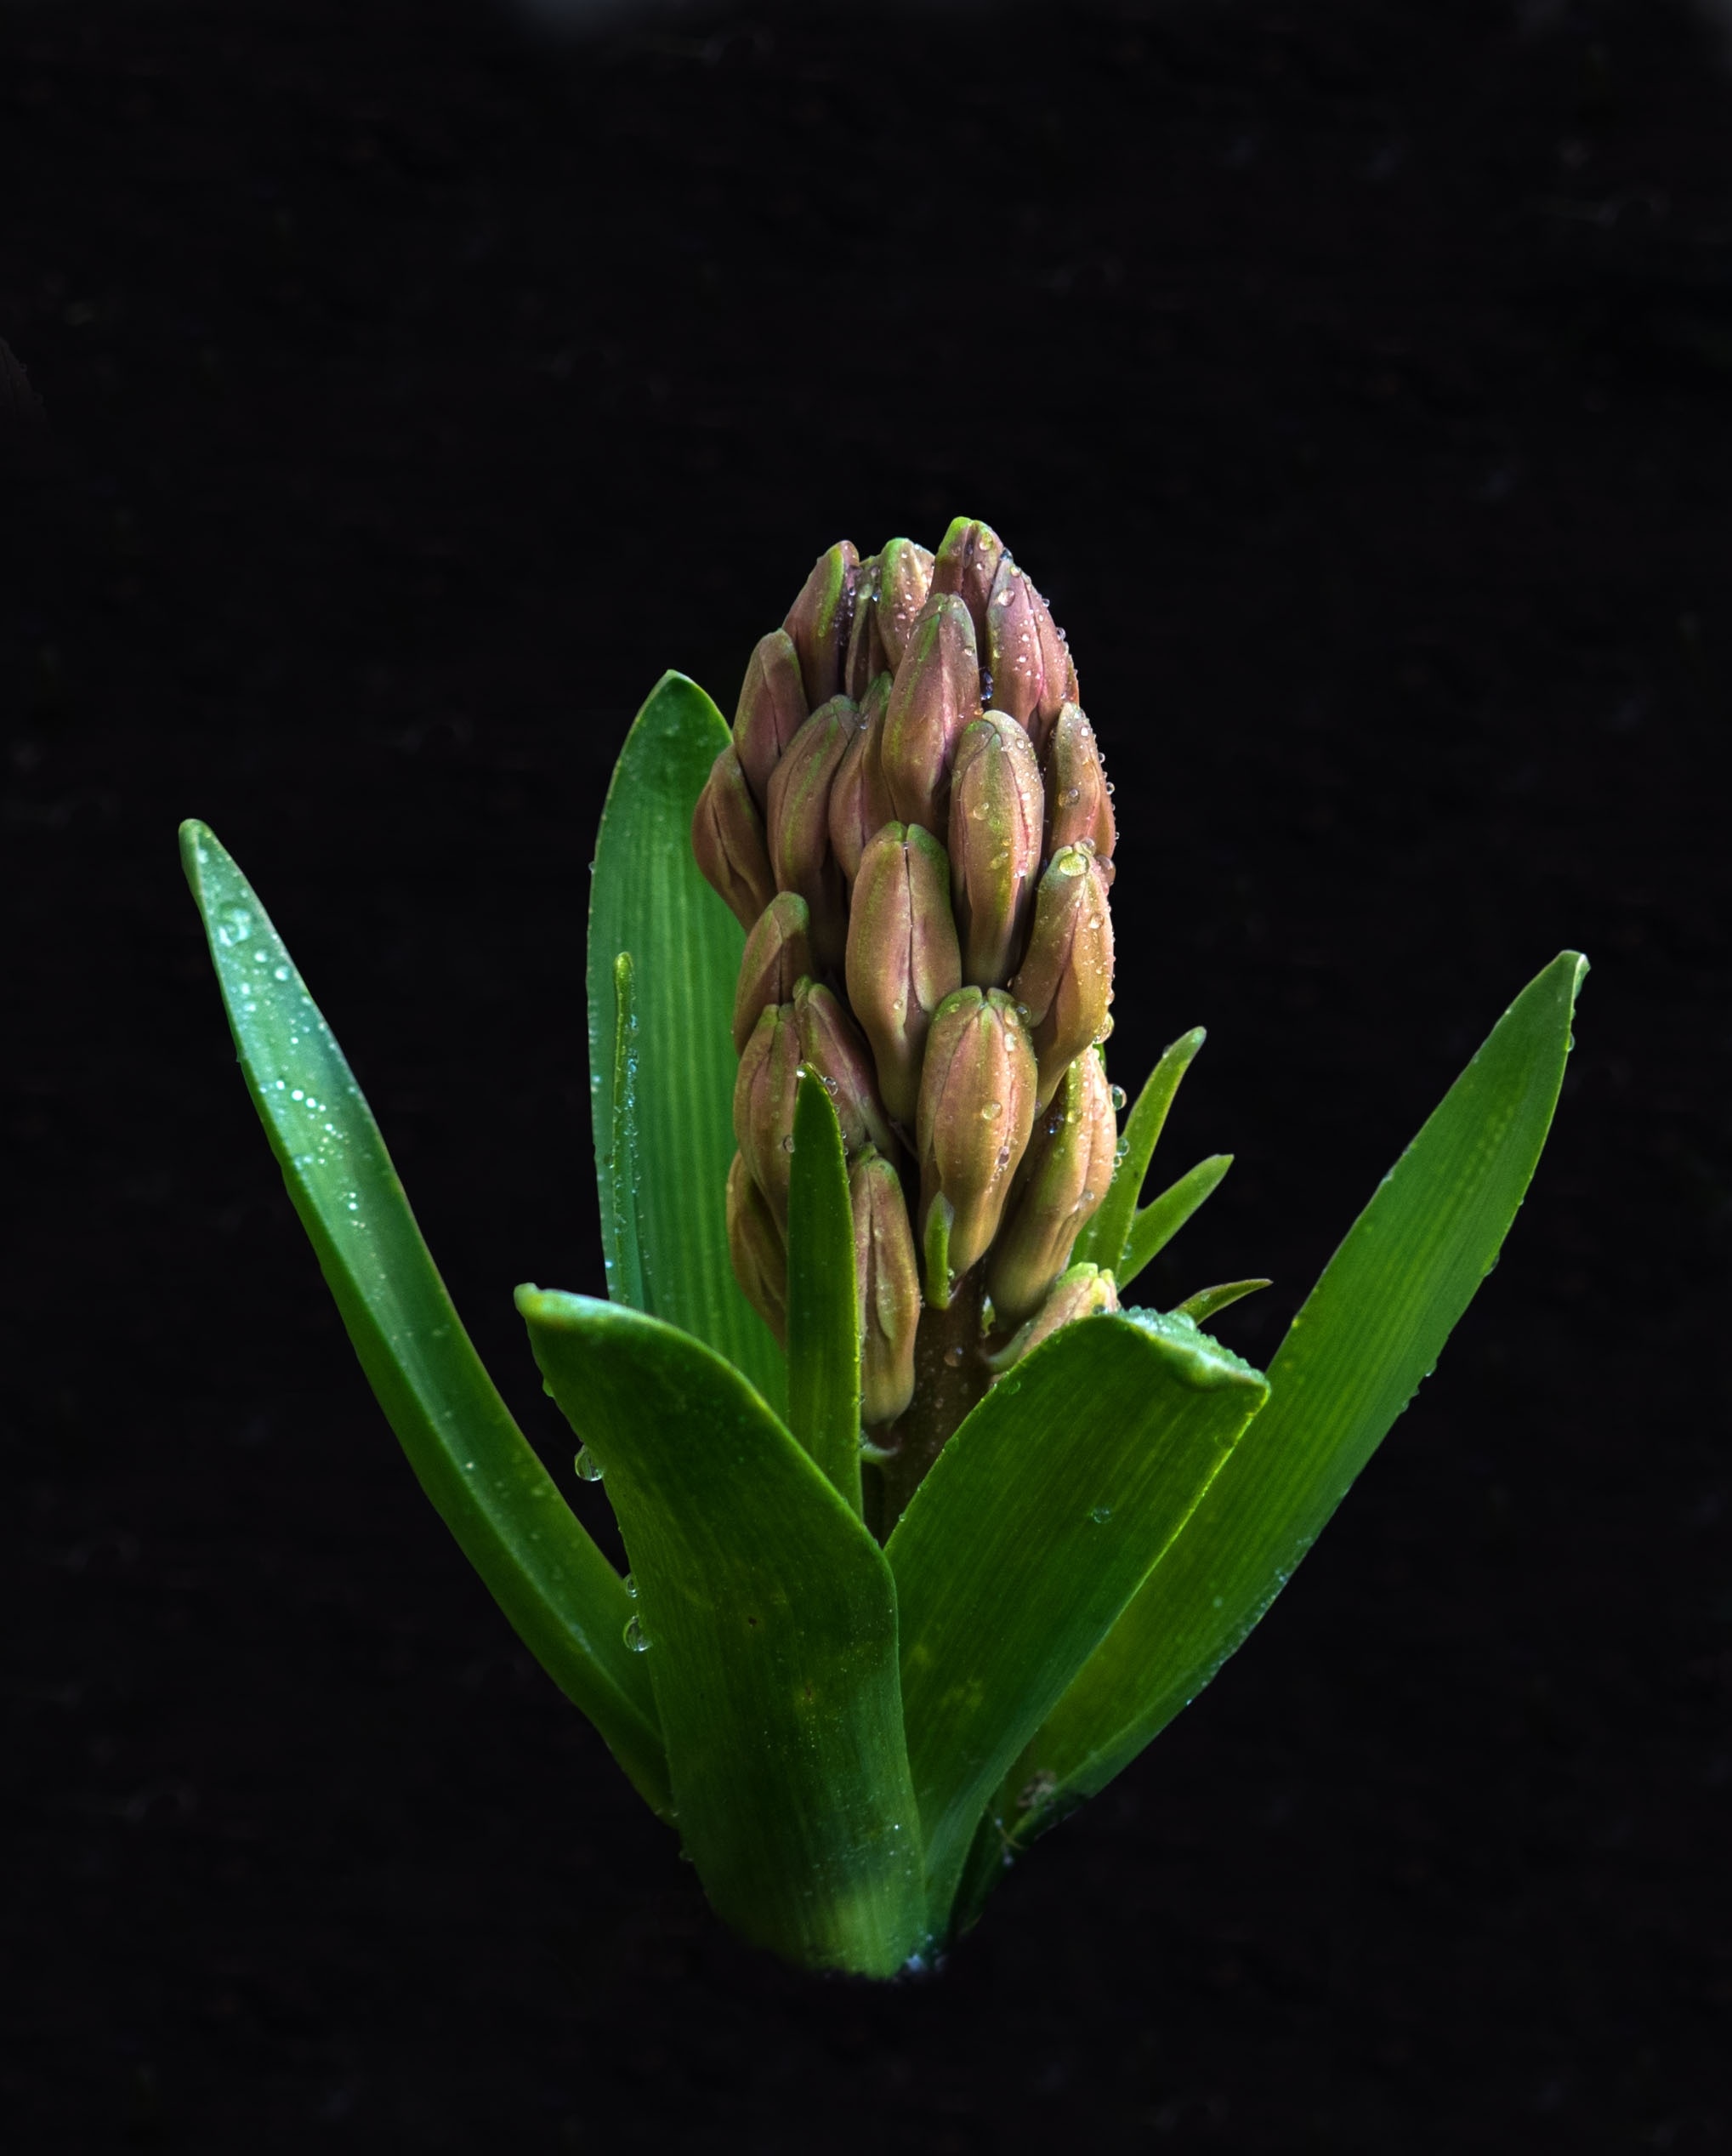 Pinecone plant